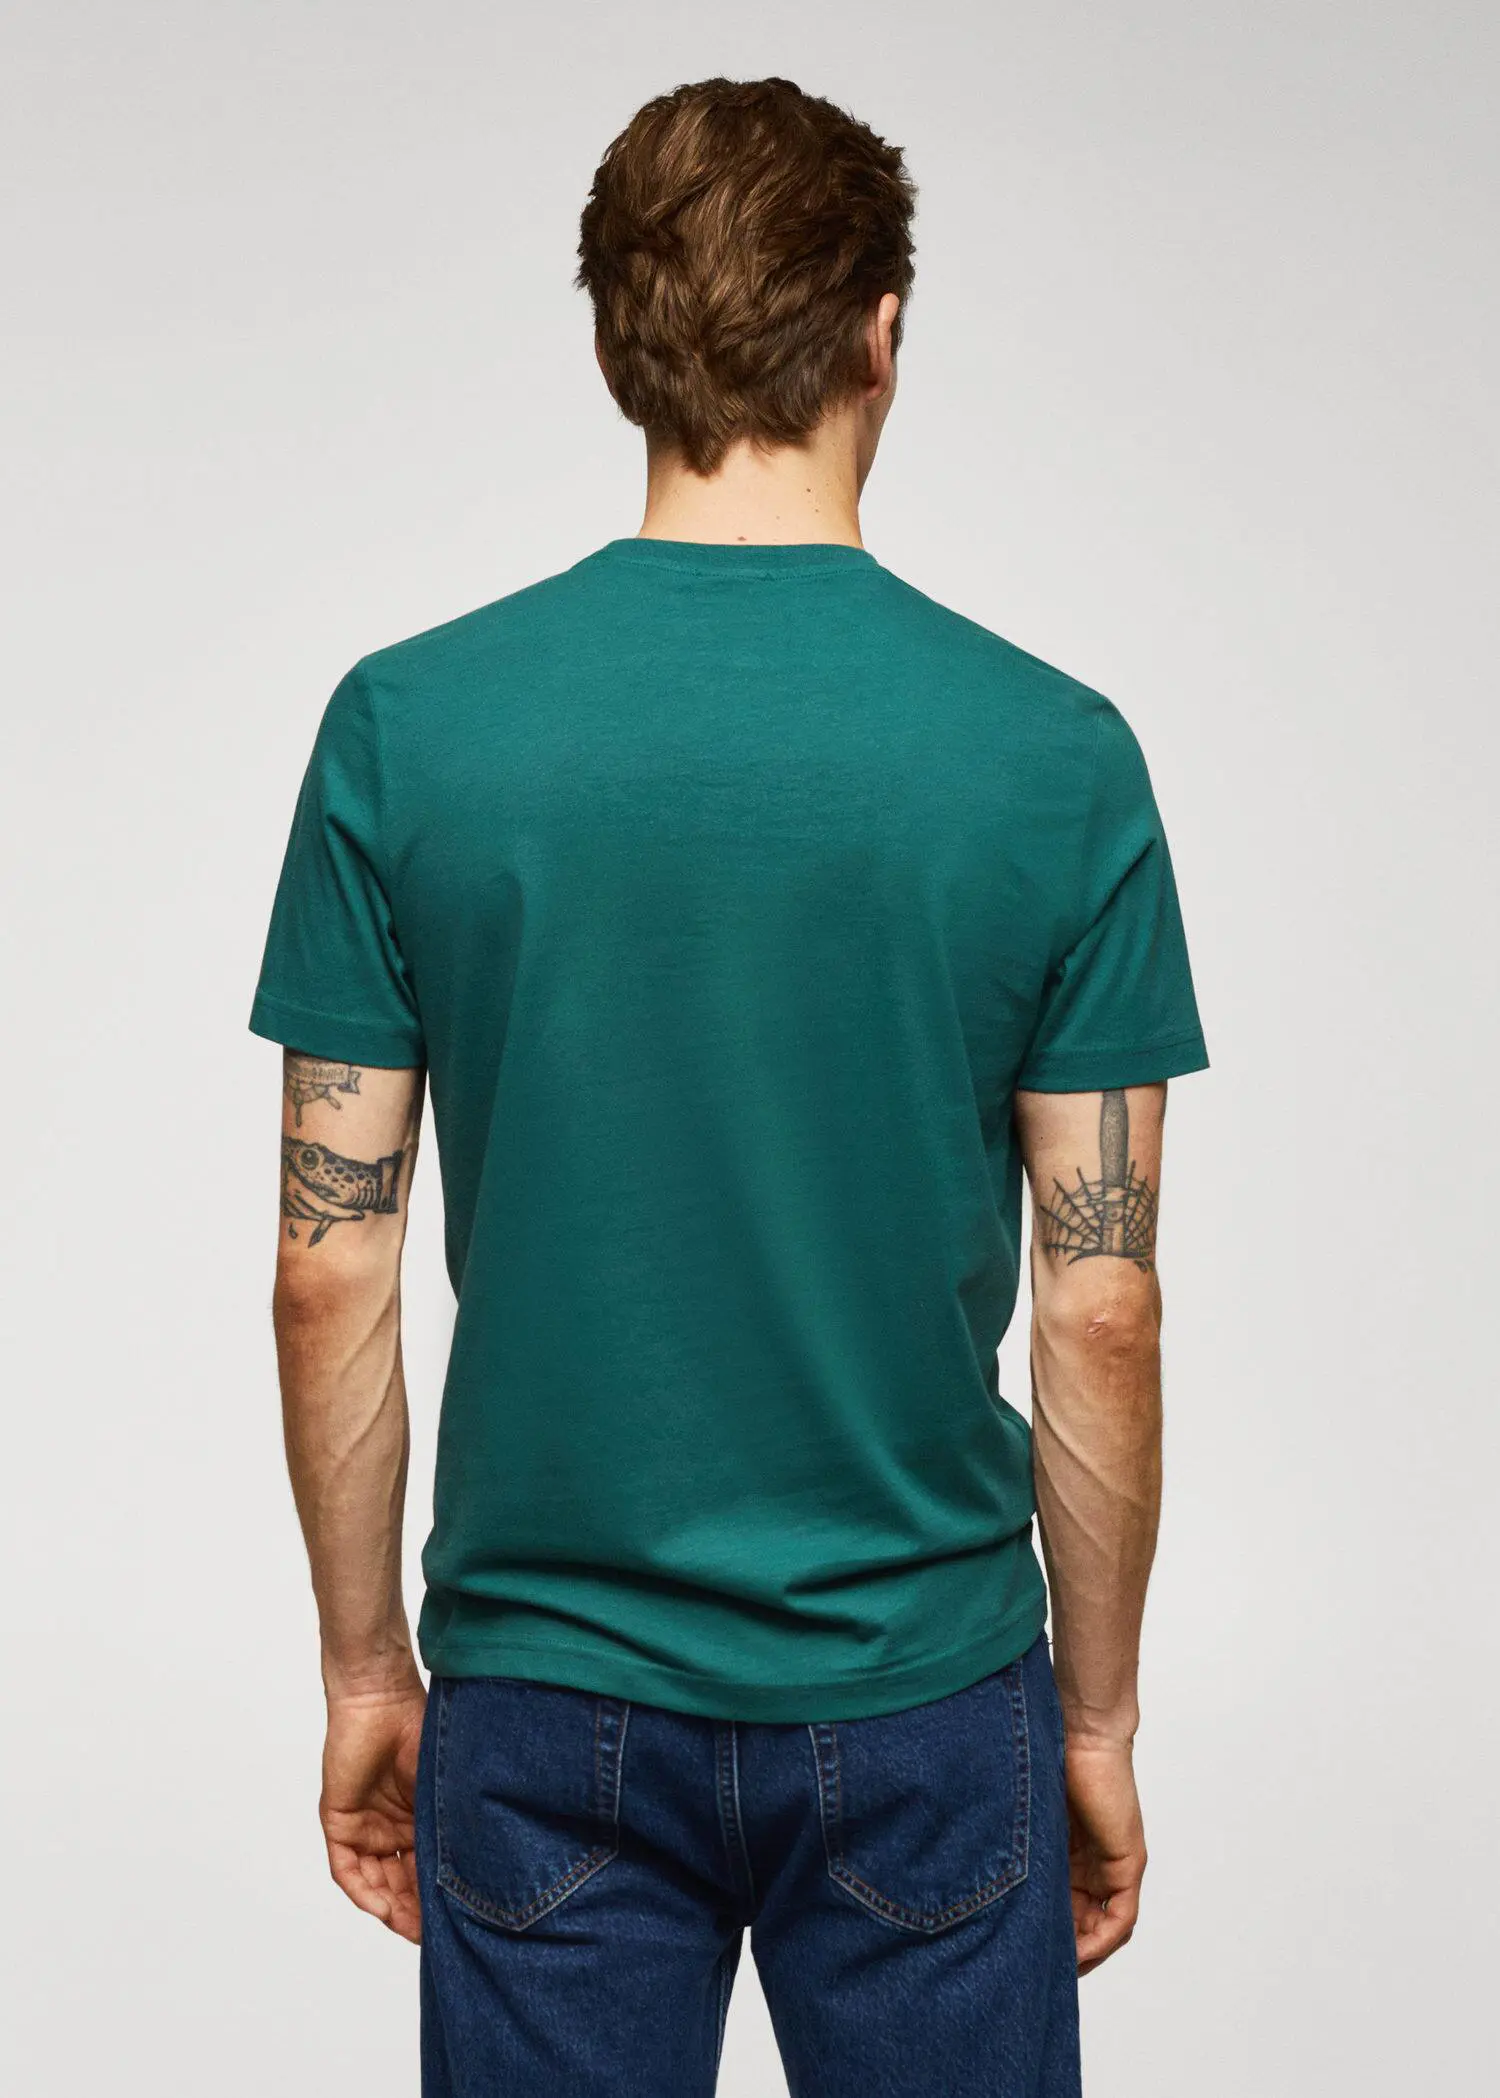 Mango T-shirt de 100% algodão com logo. 3